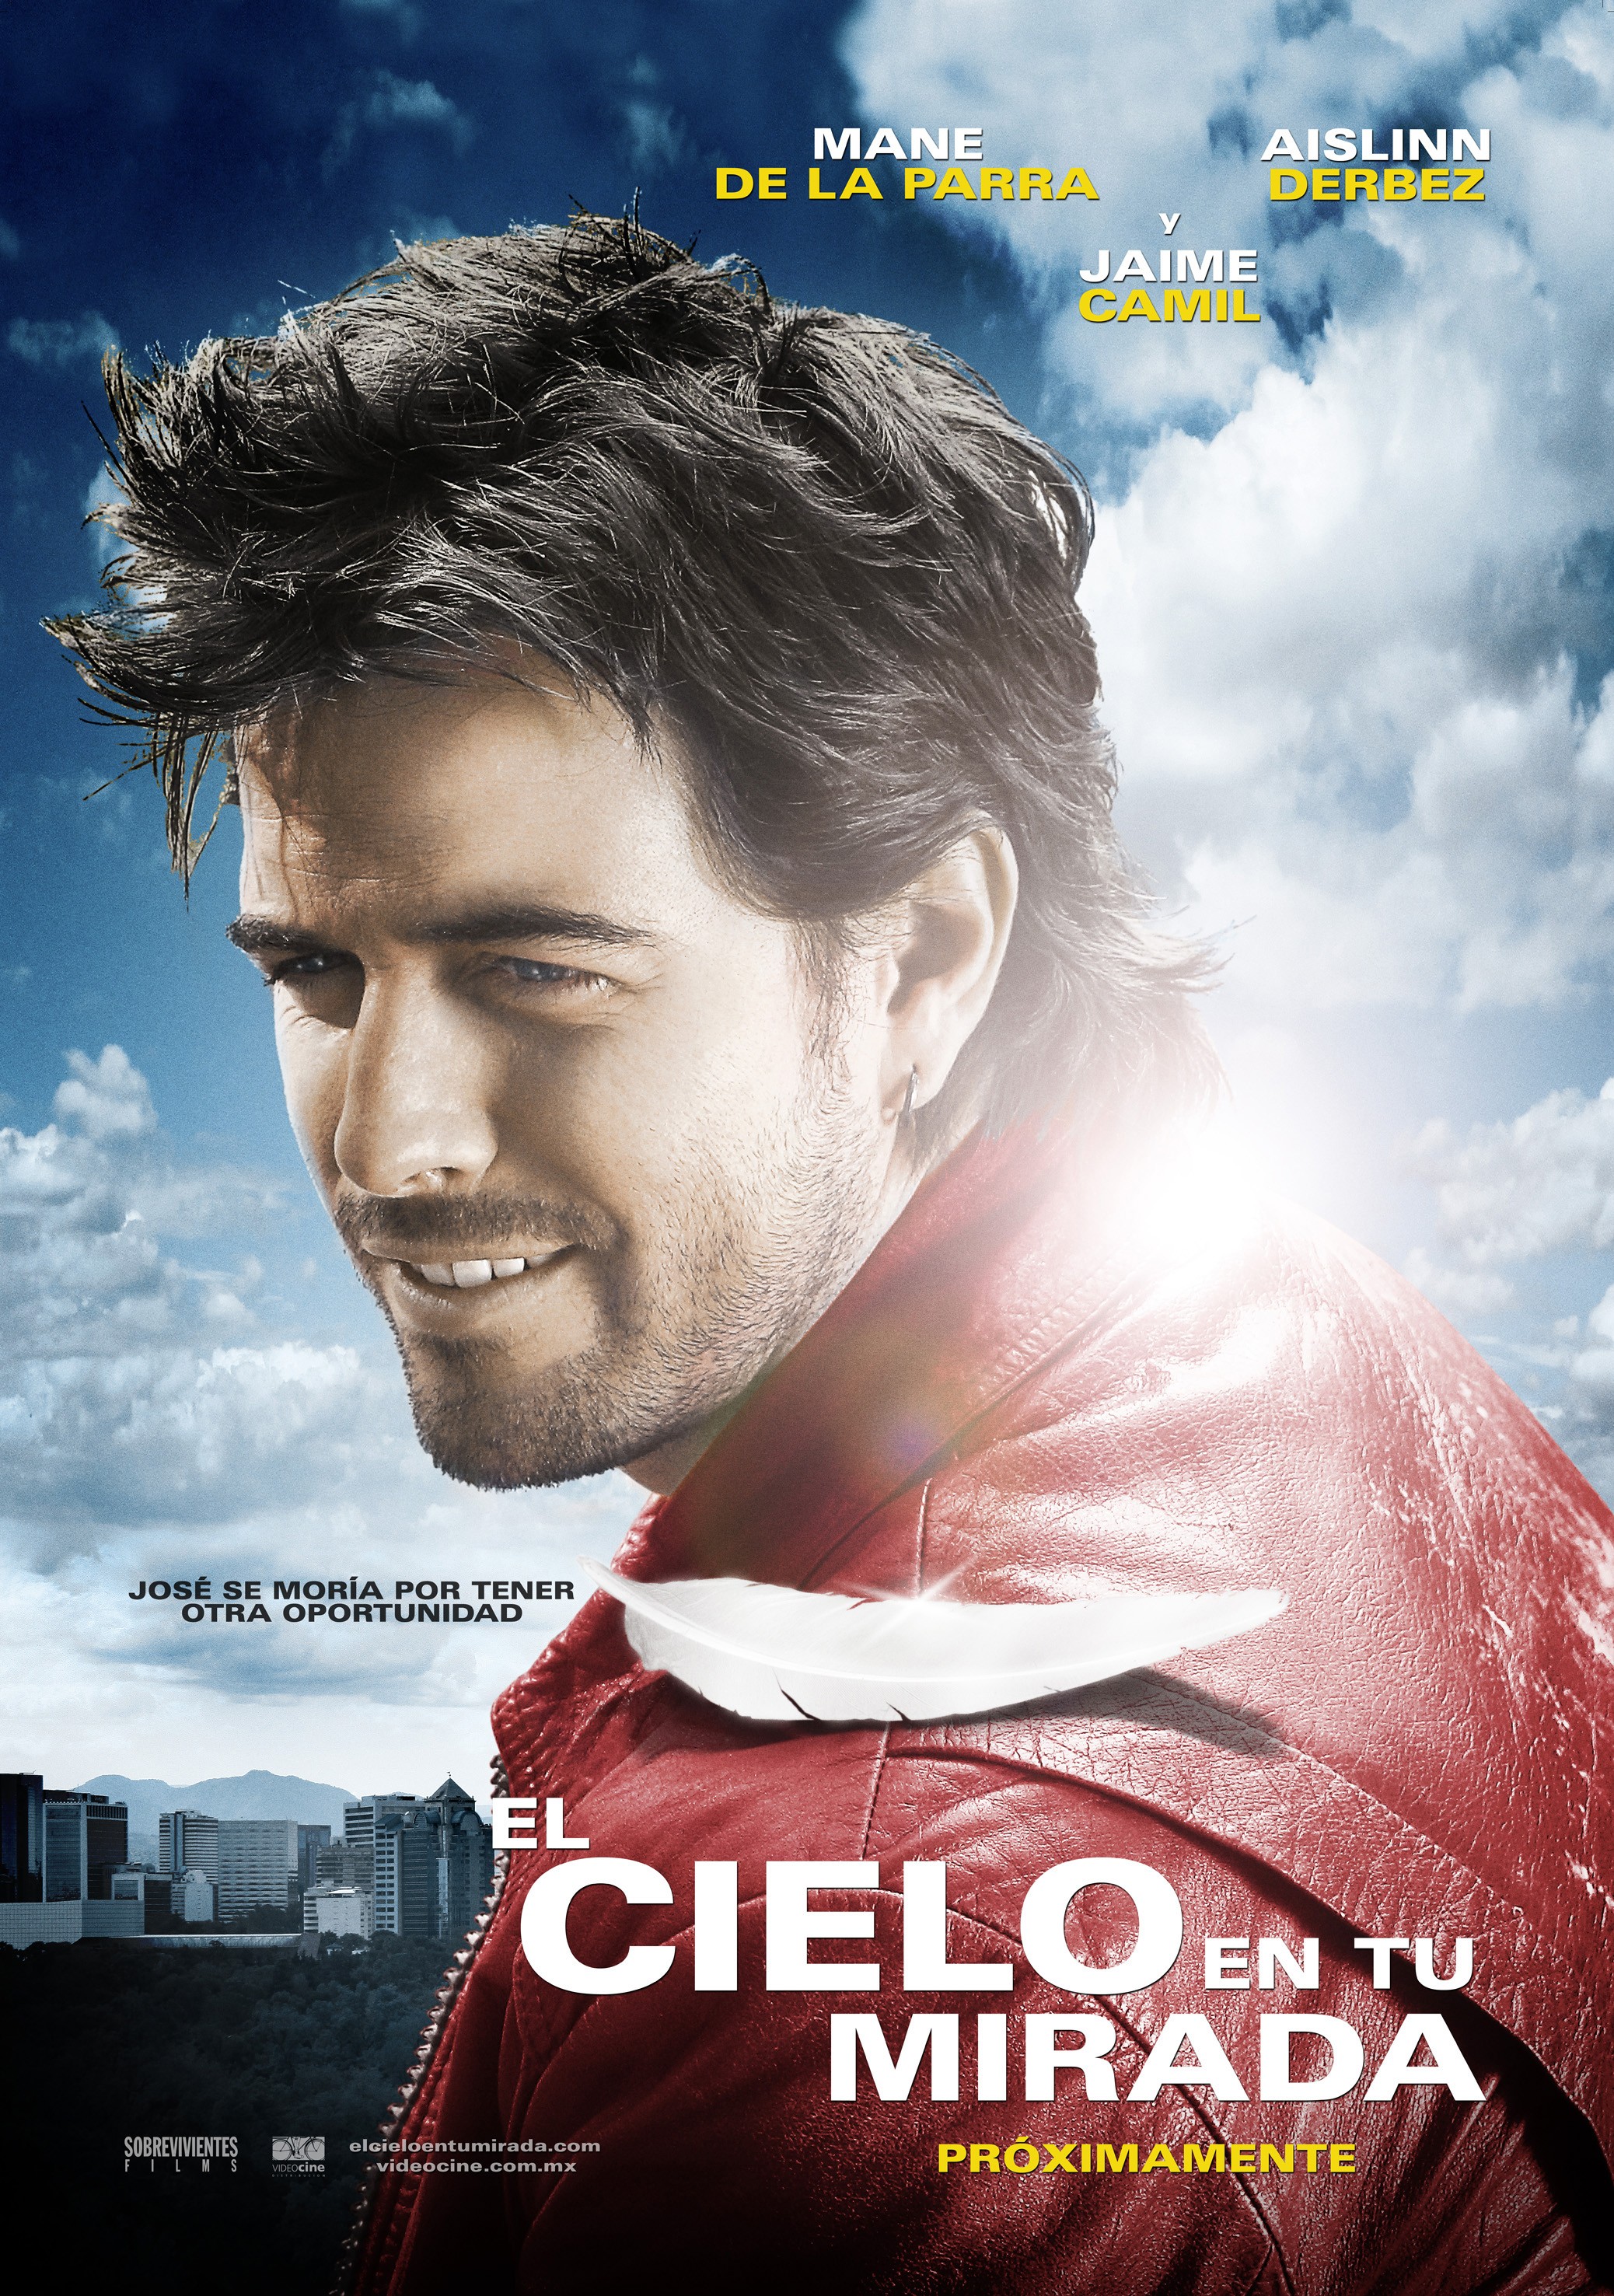 Mega Sized Movie Poster Image for El cielo en tu mirada (#2 of 3)